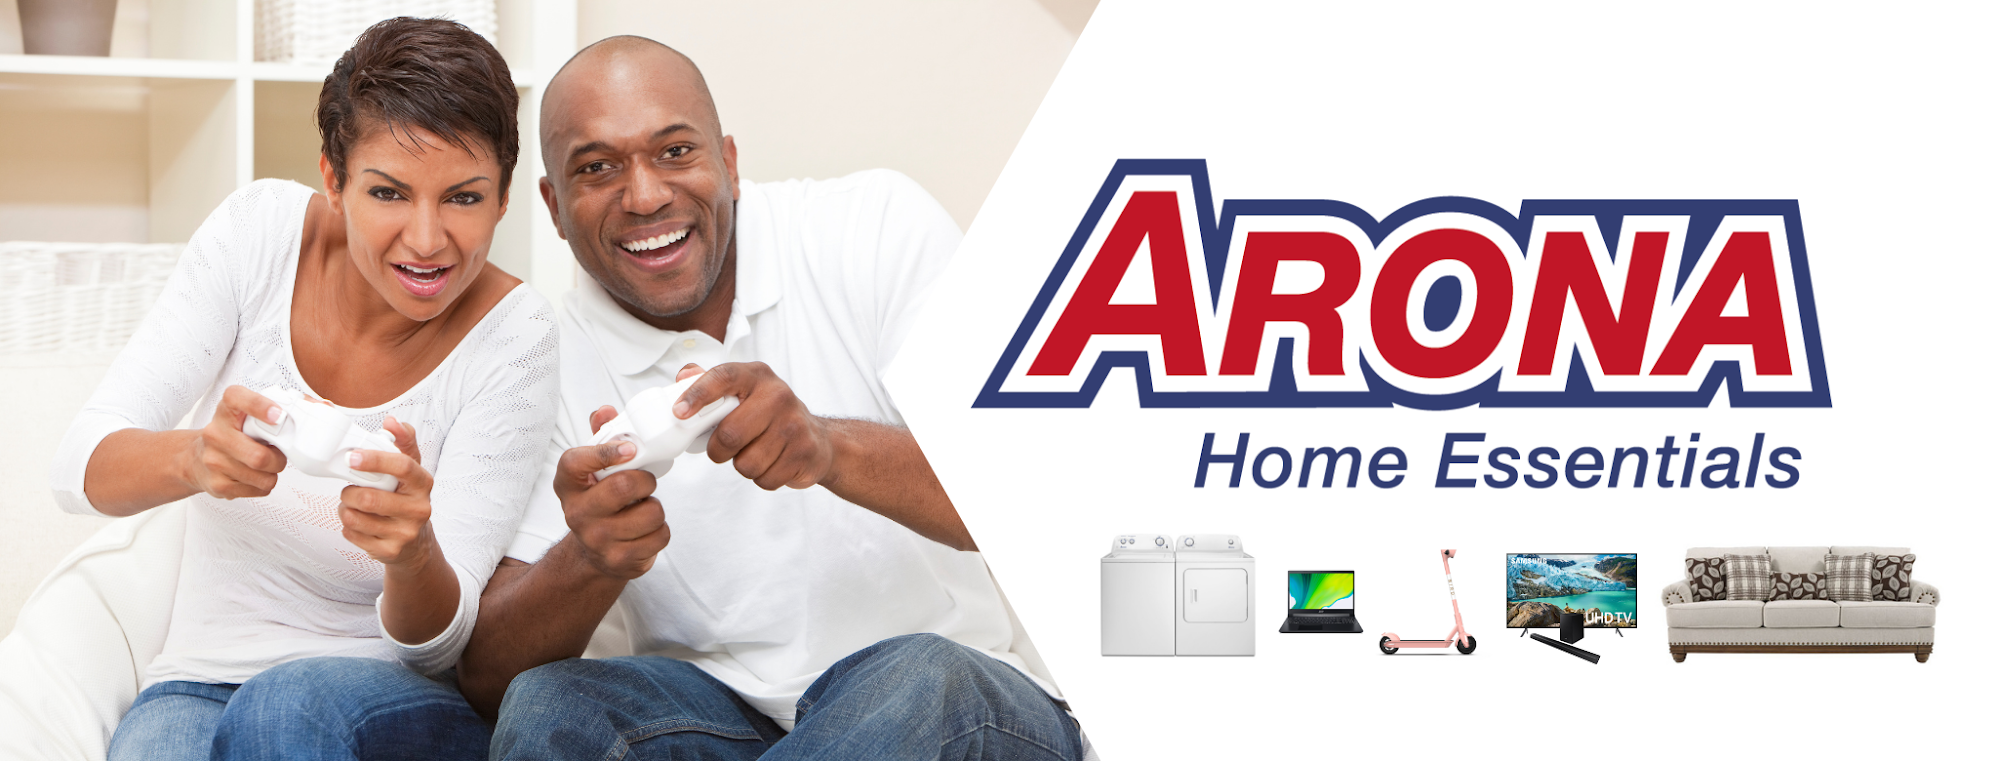 Arona Home Essentials Central City